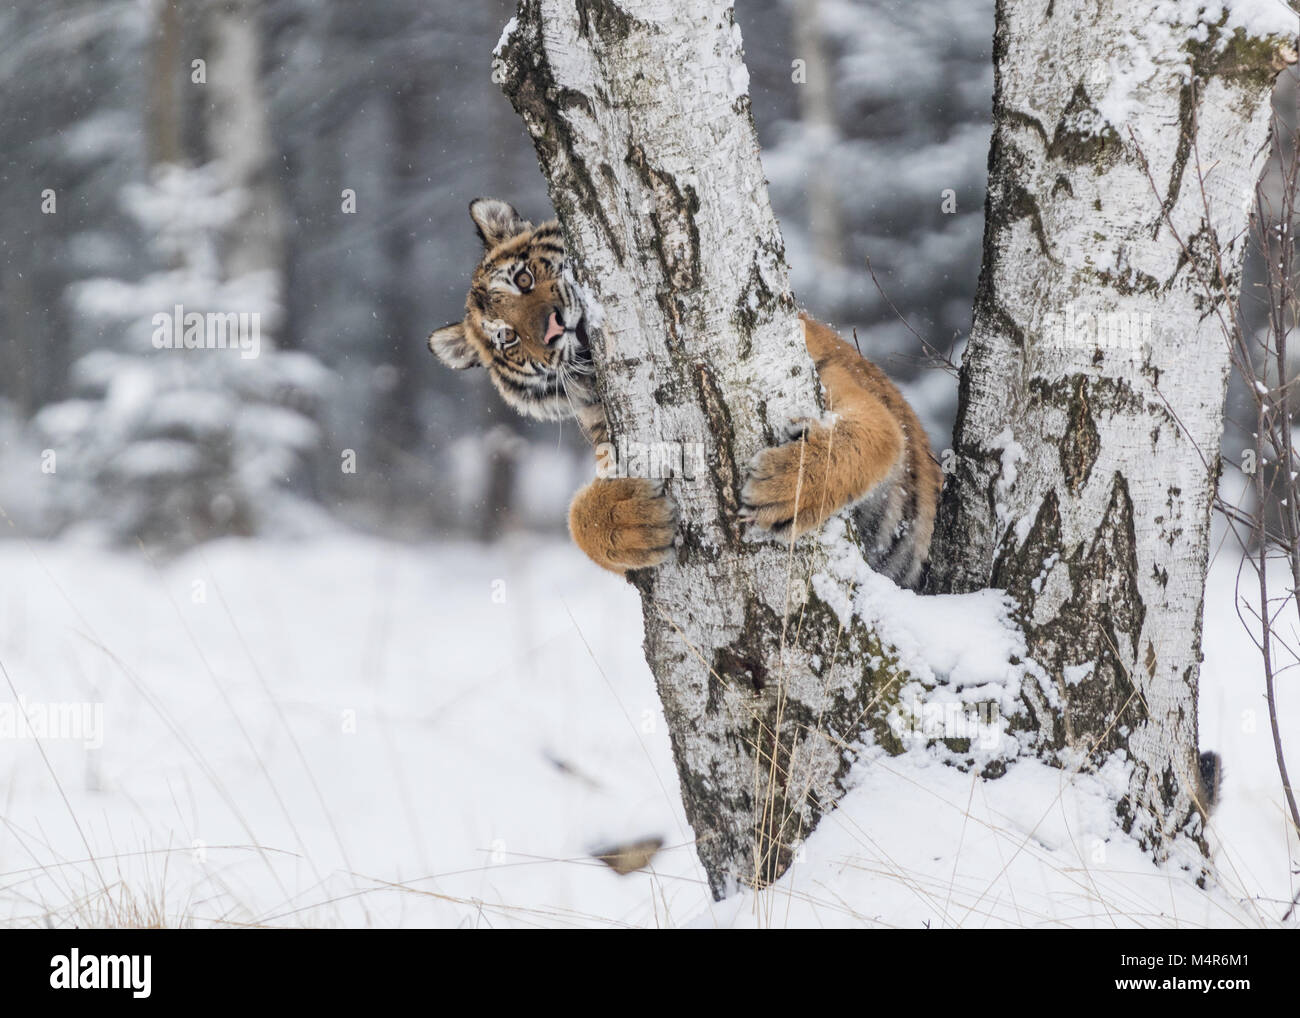 Le Usurian tigre dans un paysage d'hiver sauvages grimpe sur un arbre. Tigre de Sibérie, Panthera tigris altaica, homme de neige de fourrure, . Predator Banque D'Images